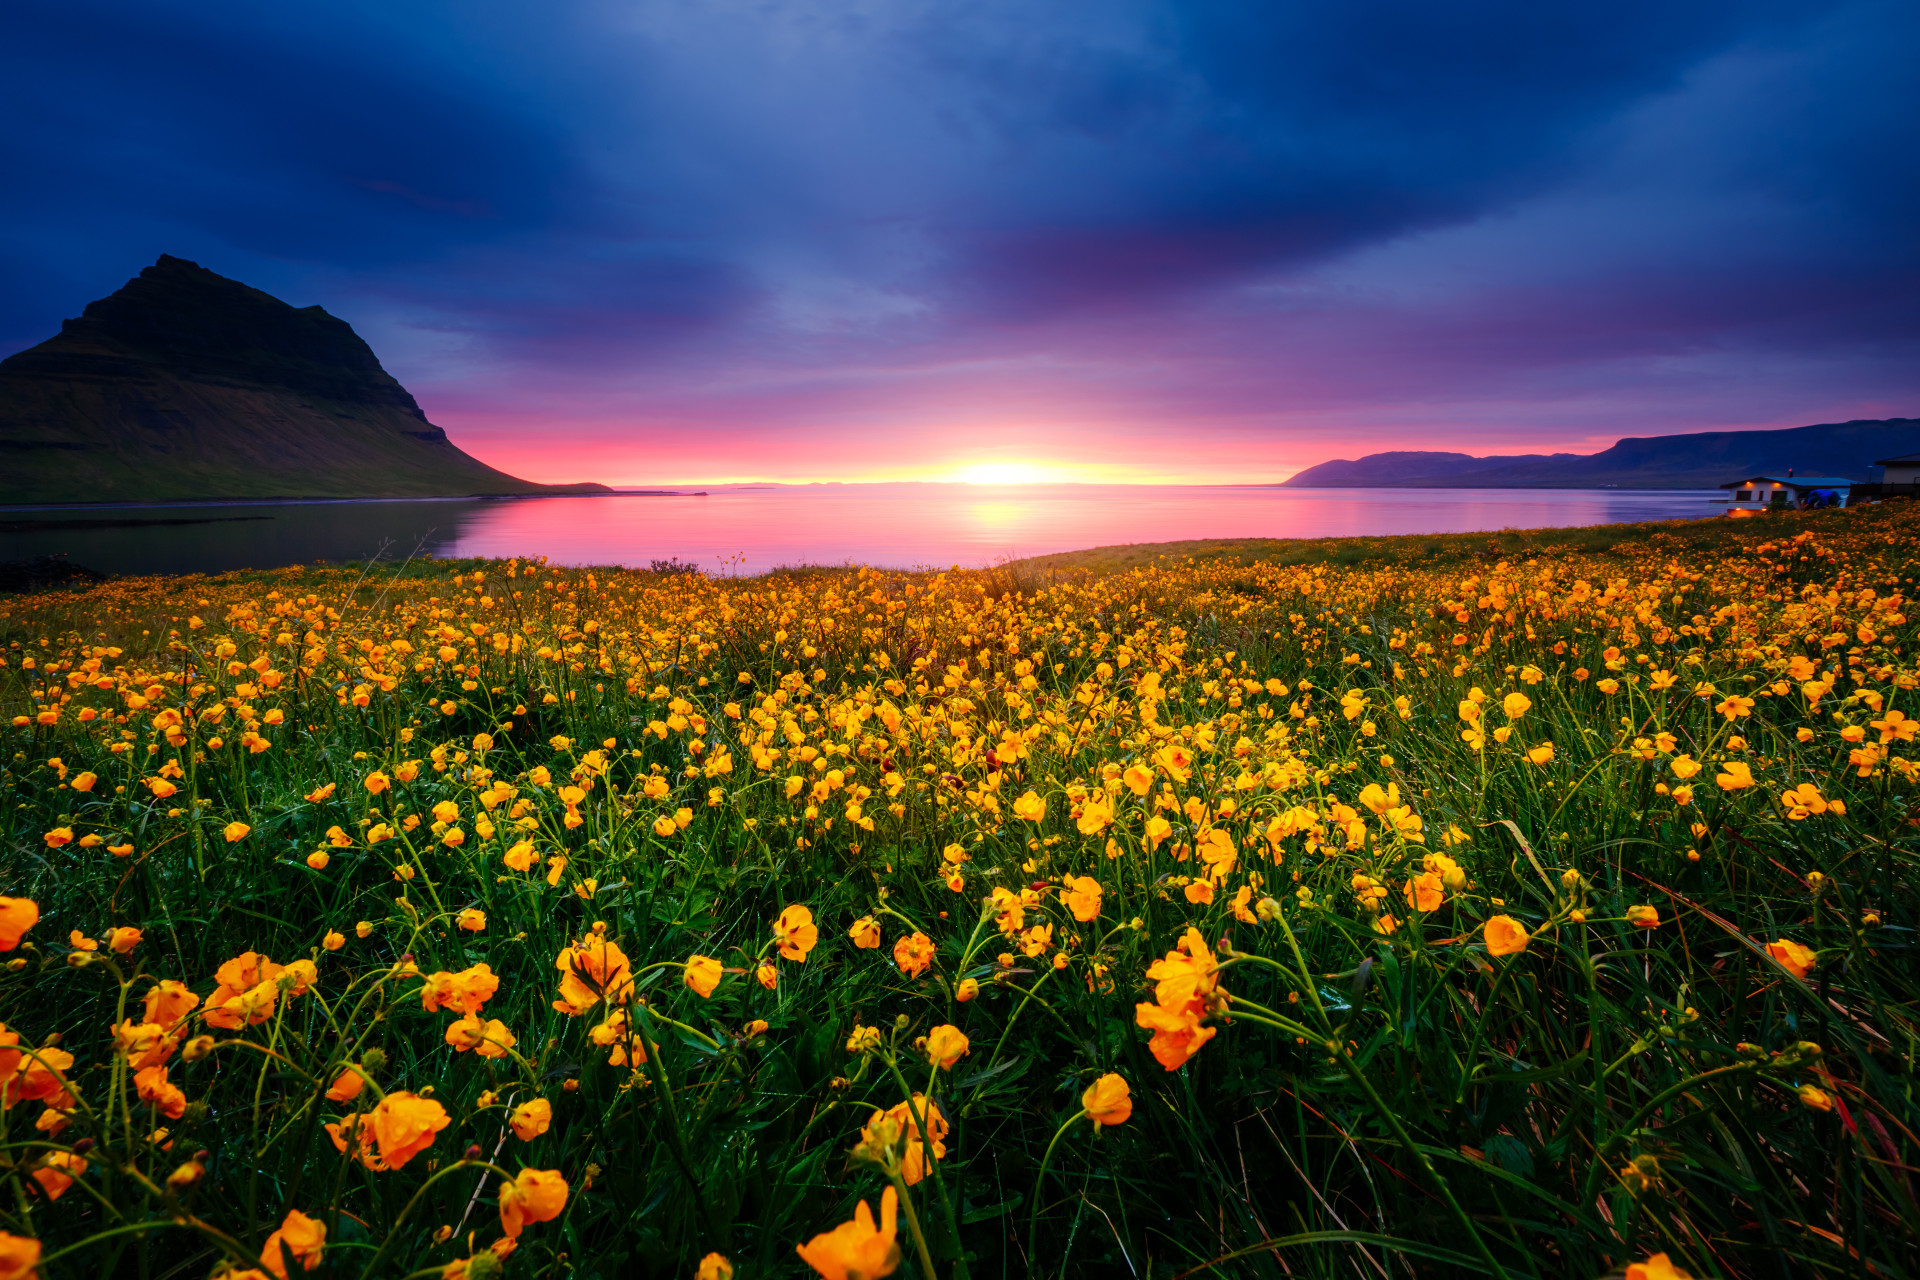 Cet endroit est particulièrement représentatif de l'Islande: de magnifiques champs de fleurs, des cascades et le majestueux mont Kirkjufell en arrière plan.<p><a href="https://www.msn.com/fr-fr/community/channel/vid-7xx8mnucu55yw63we9va2gwr7uihbxwc68fxqp25x6tg4ftibpra?cvid=94631541bc0f4f89bfd59158d696ad7e">Suivez-nous et accédez tous les jours à du contenu exclusif</a></p>